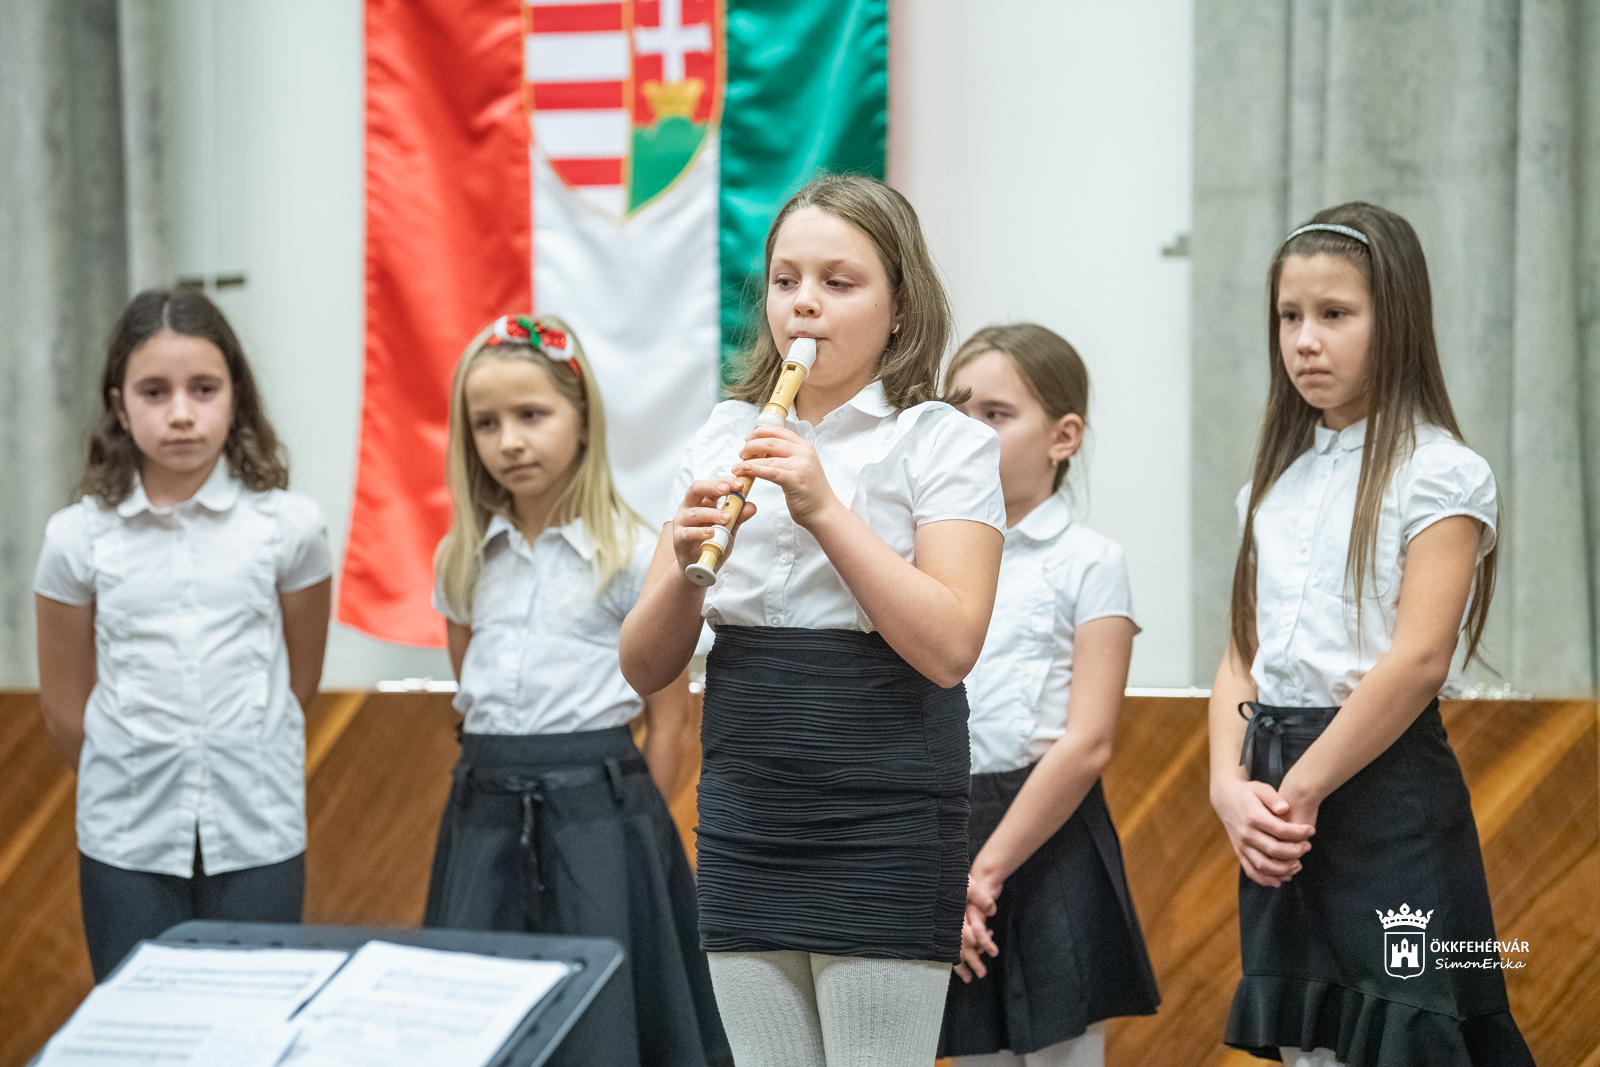 Ünnepváró hangverseny a Kodály Zoltán Általános Iskolával a Városháza dísztermében